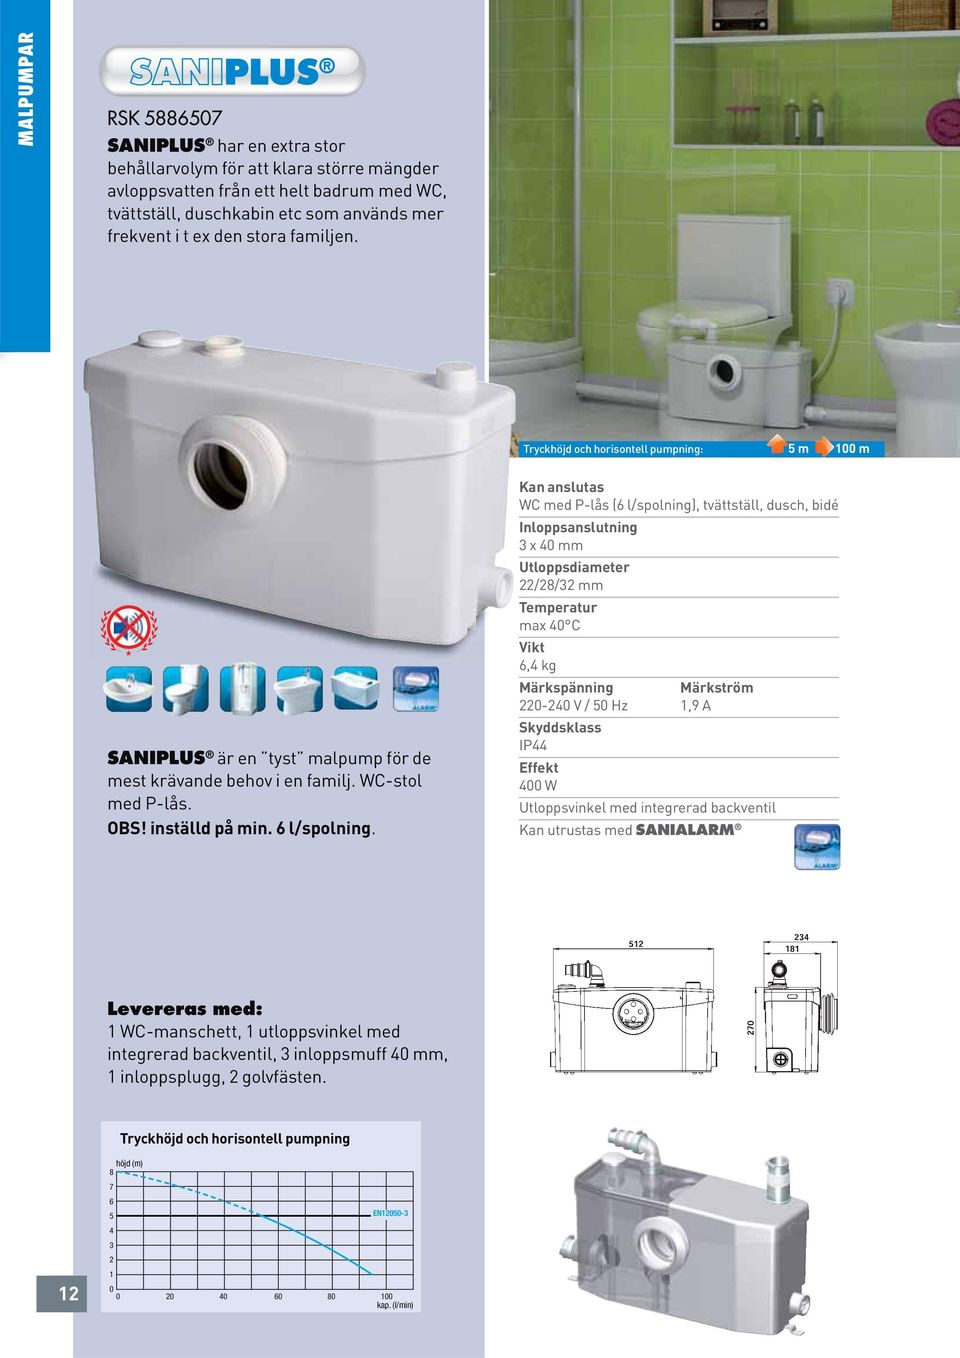 Kan anslutas WC med P-lås (6 l/spolning), tvättställ, dusch, bidé Inloppsanslutning 3 x 40 mm /8/3 mm max 40 C 6,4 kg Märkspänning Märkström 0-40 V / 50 Hz 1,9 A Skyddsklass IP44 400 W